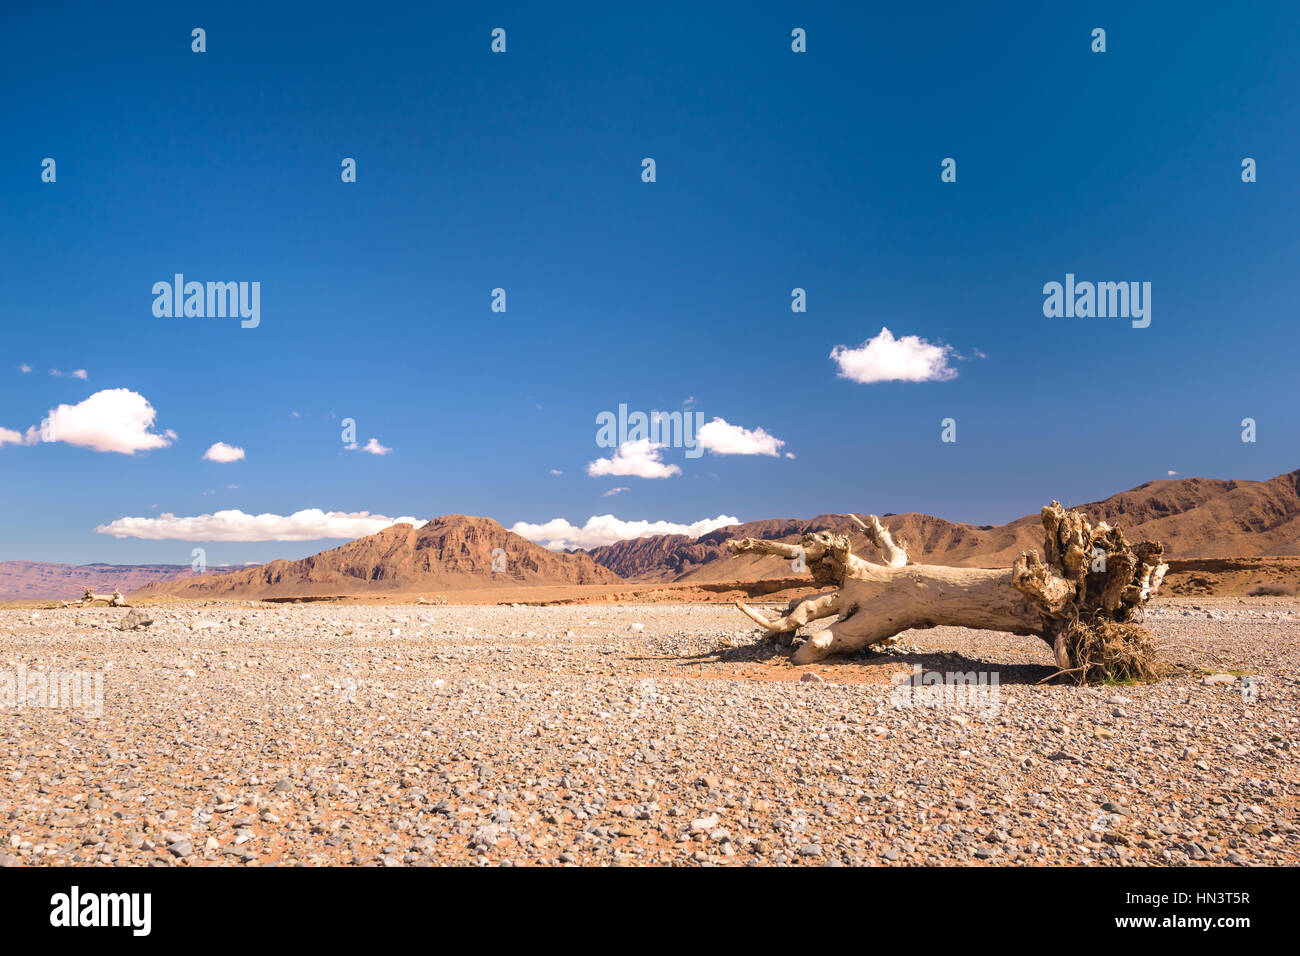 Ein Stub oder toter Baum liegen in einer sehr trockenen Steinwüste in Marokko. Stockfoto